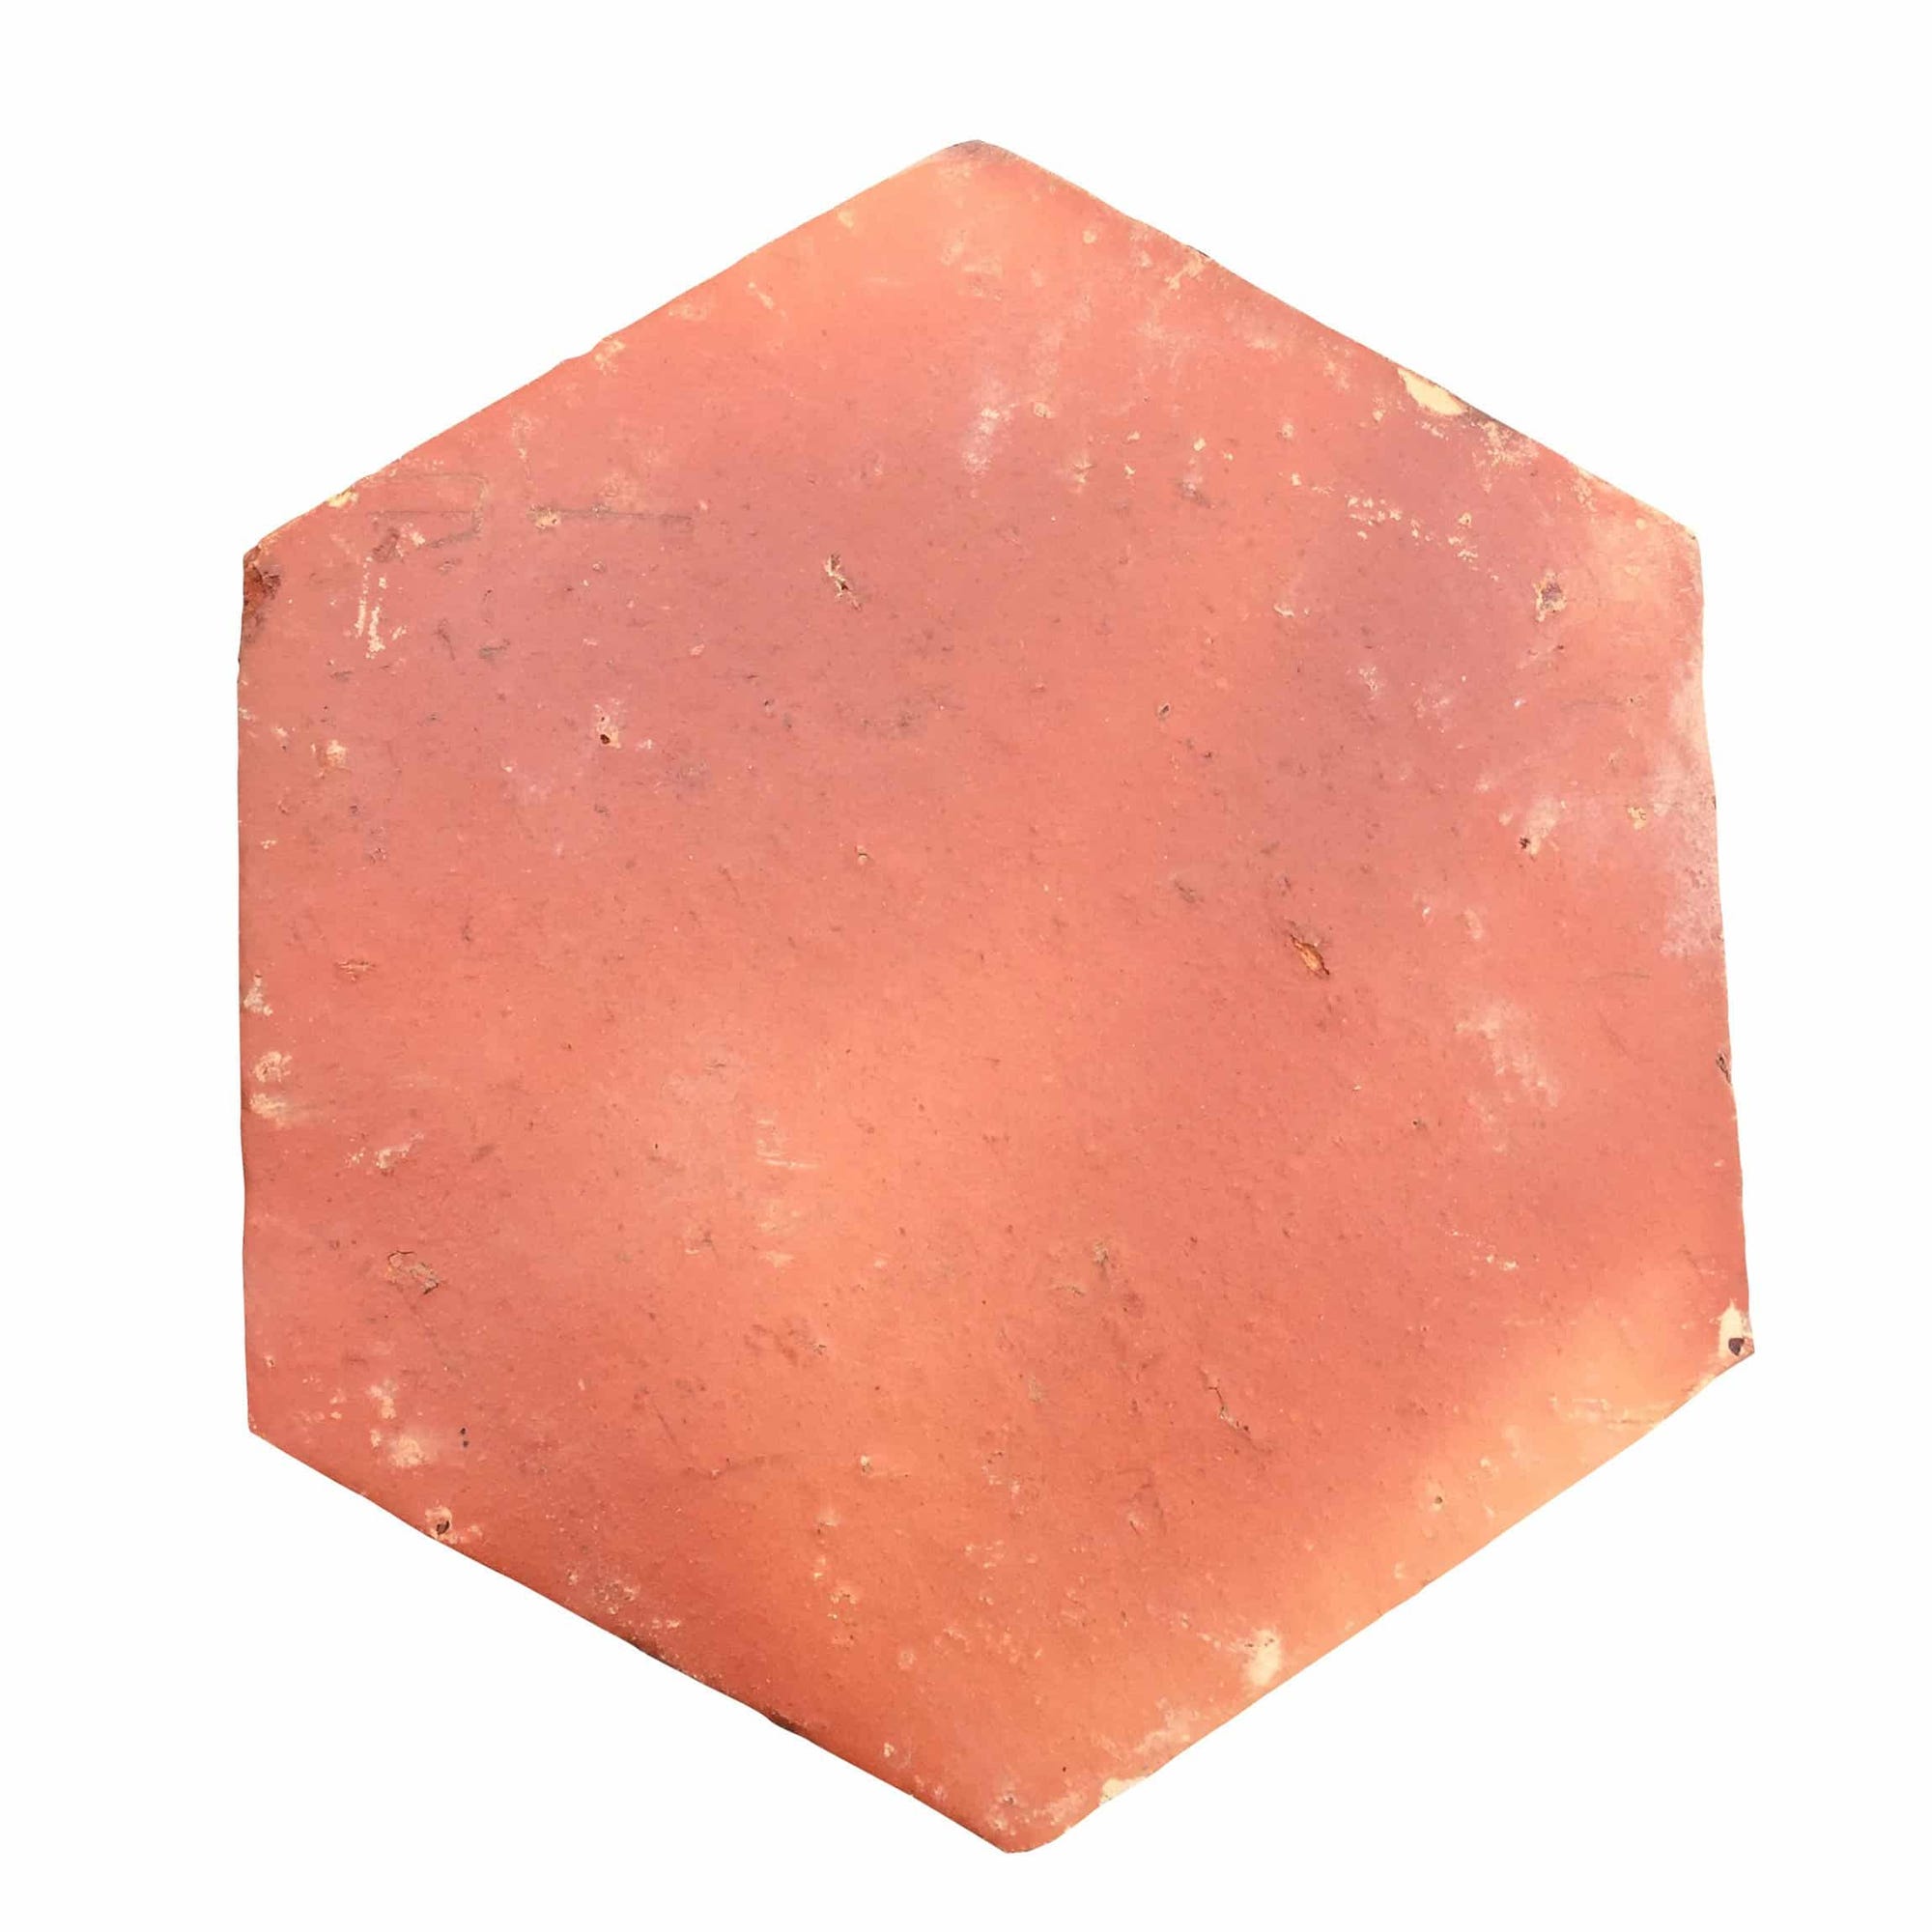 Tomette terre cuite hexagonale rouge rustique finition traditionnelle - 16x16 cm Ep. 2cm - (vendu au m²) - Ligerio 1